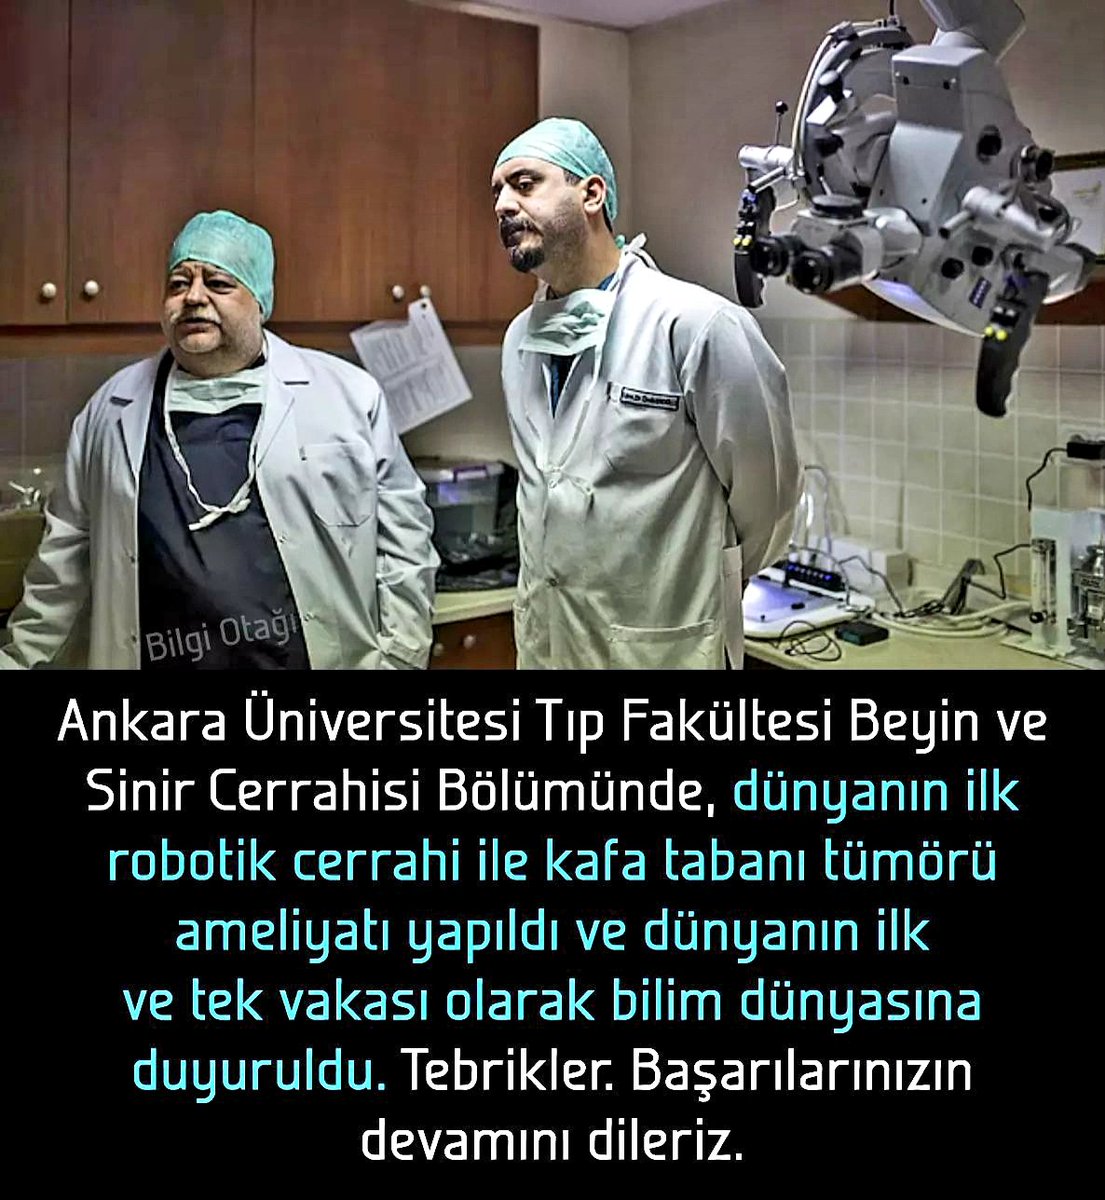 Türk Doktorlar Dünyada Bir İlki Gerçekleştirdi.
Dünyanın ilk robotik kafa tabanı tümörü ameliyatı Türkiye'de yapıldı.
#turkishmedicine #turkishdoctors #globalmedical #medicalguide